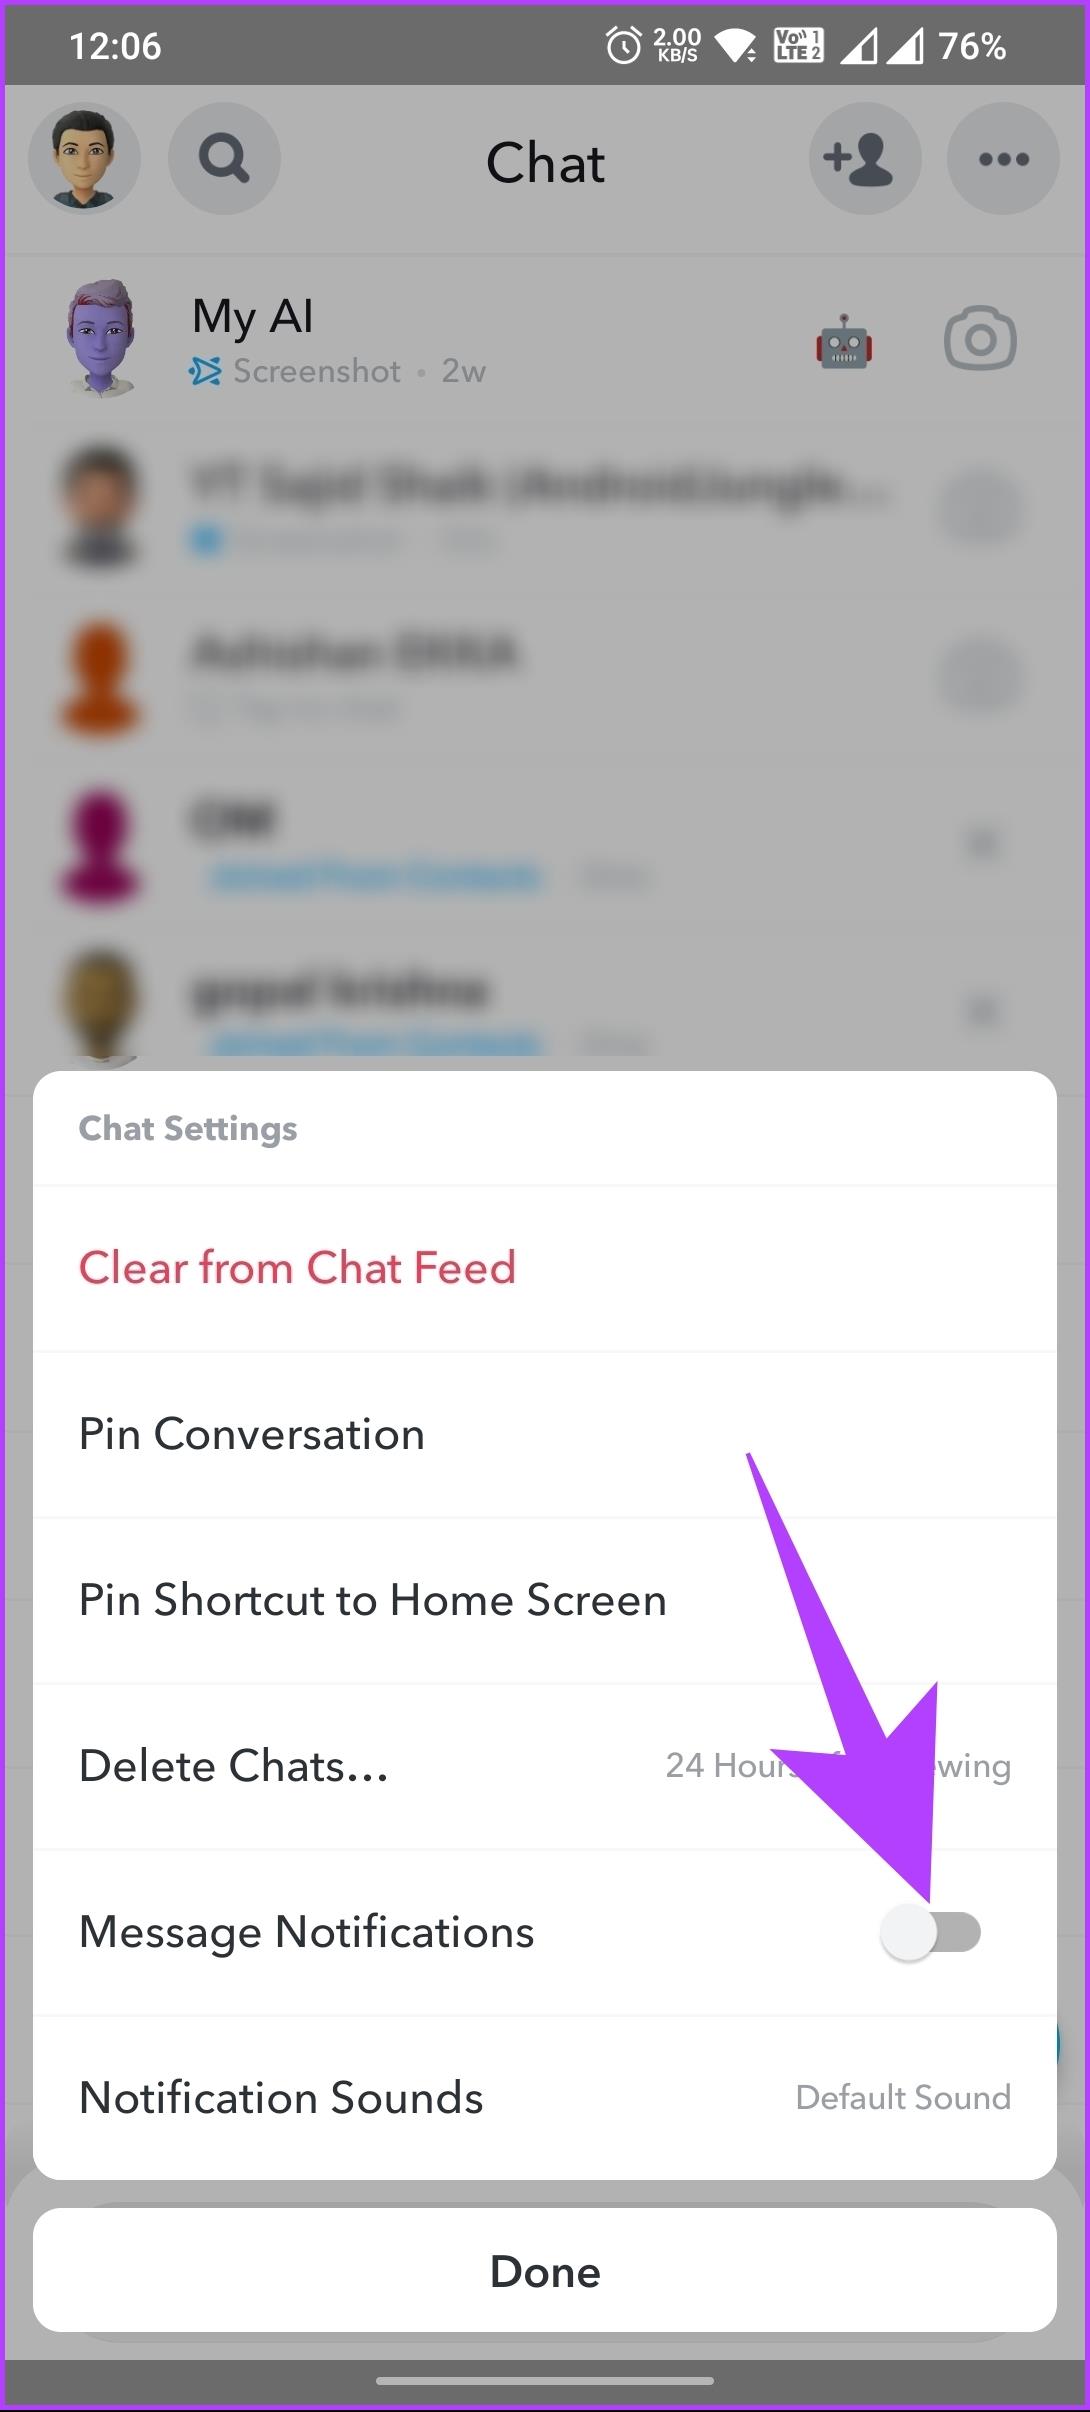 Snapchatでの会話を非表示にする7つの簡単な方法